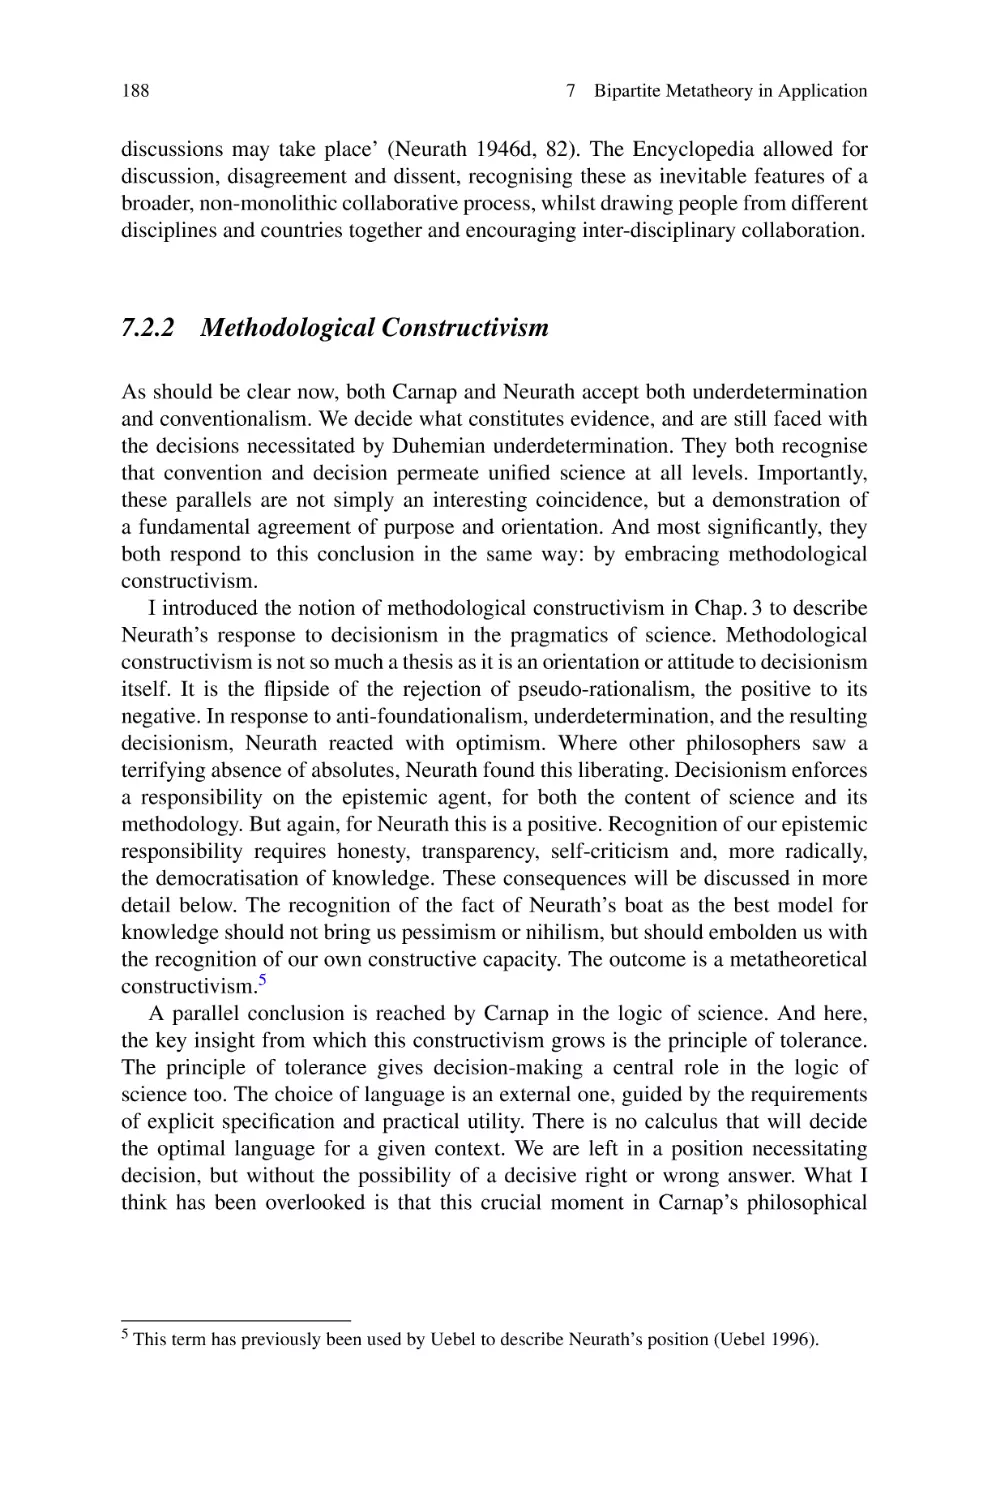 7.2.2 Methodological Constructivism